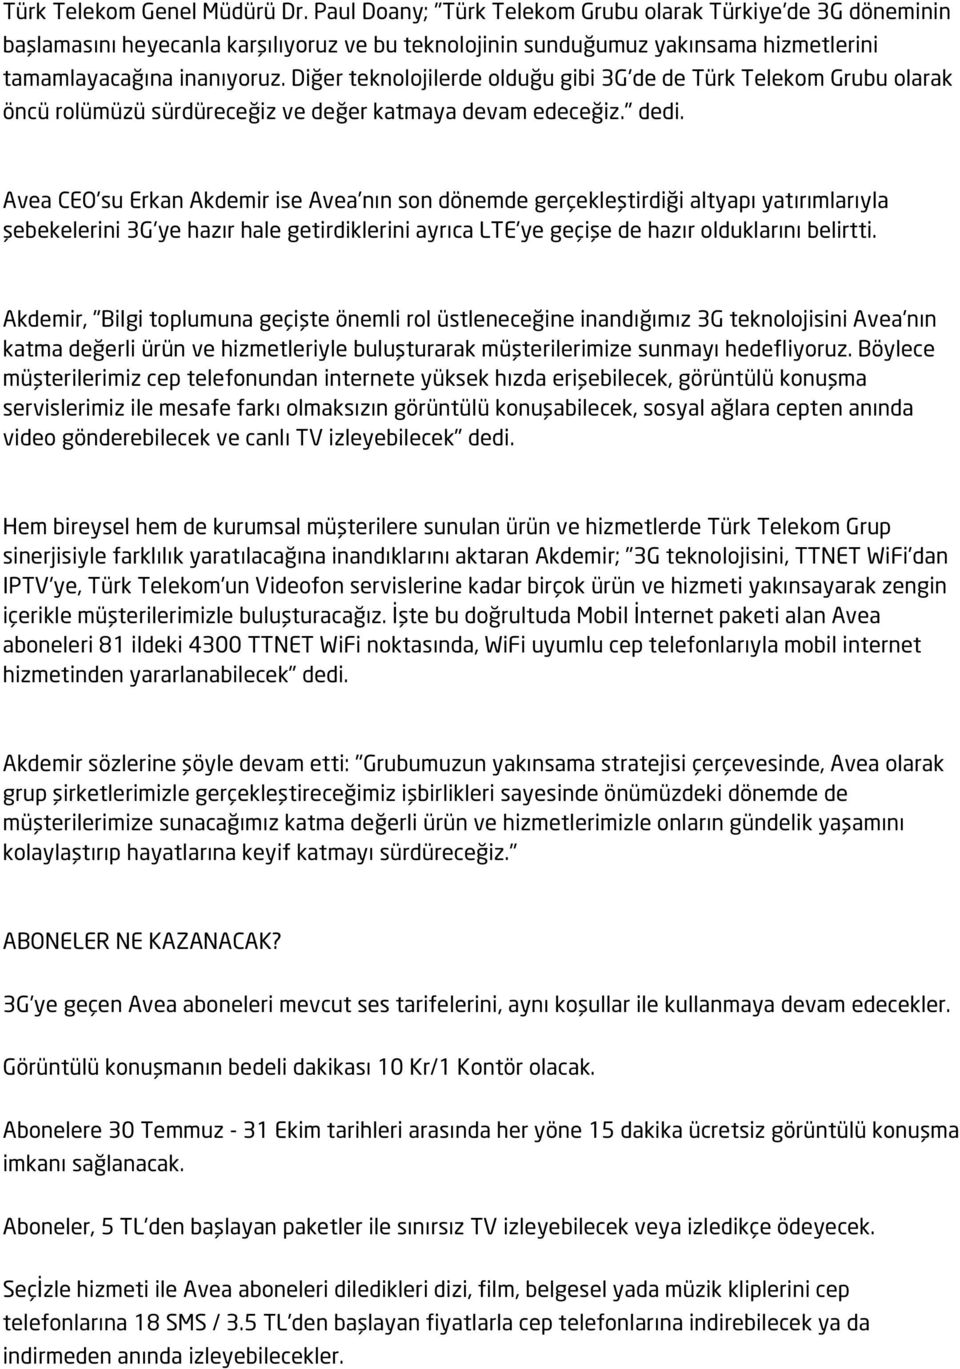 Diğer teknolojilerde olduğu gibi 3G'de de Türk Telekom Grubu olarak öncü rolümüzü sürdüreceğiz ve değer katmaya devam edeceğiz." dedi.